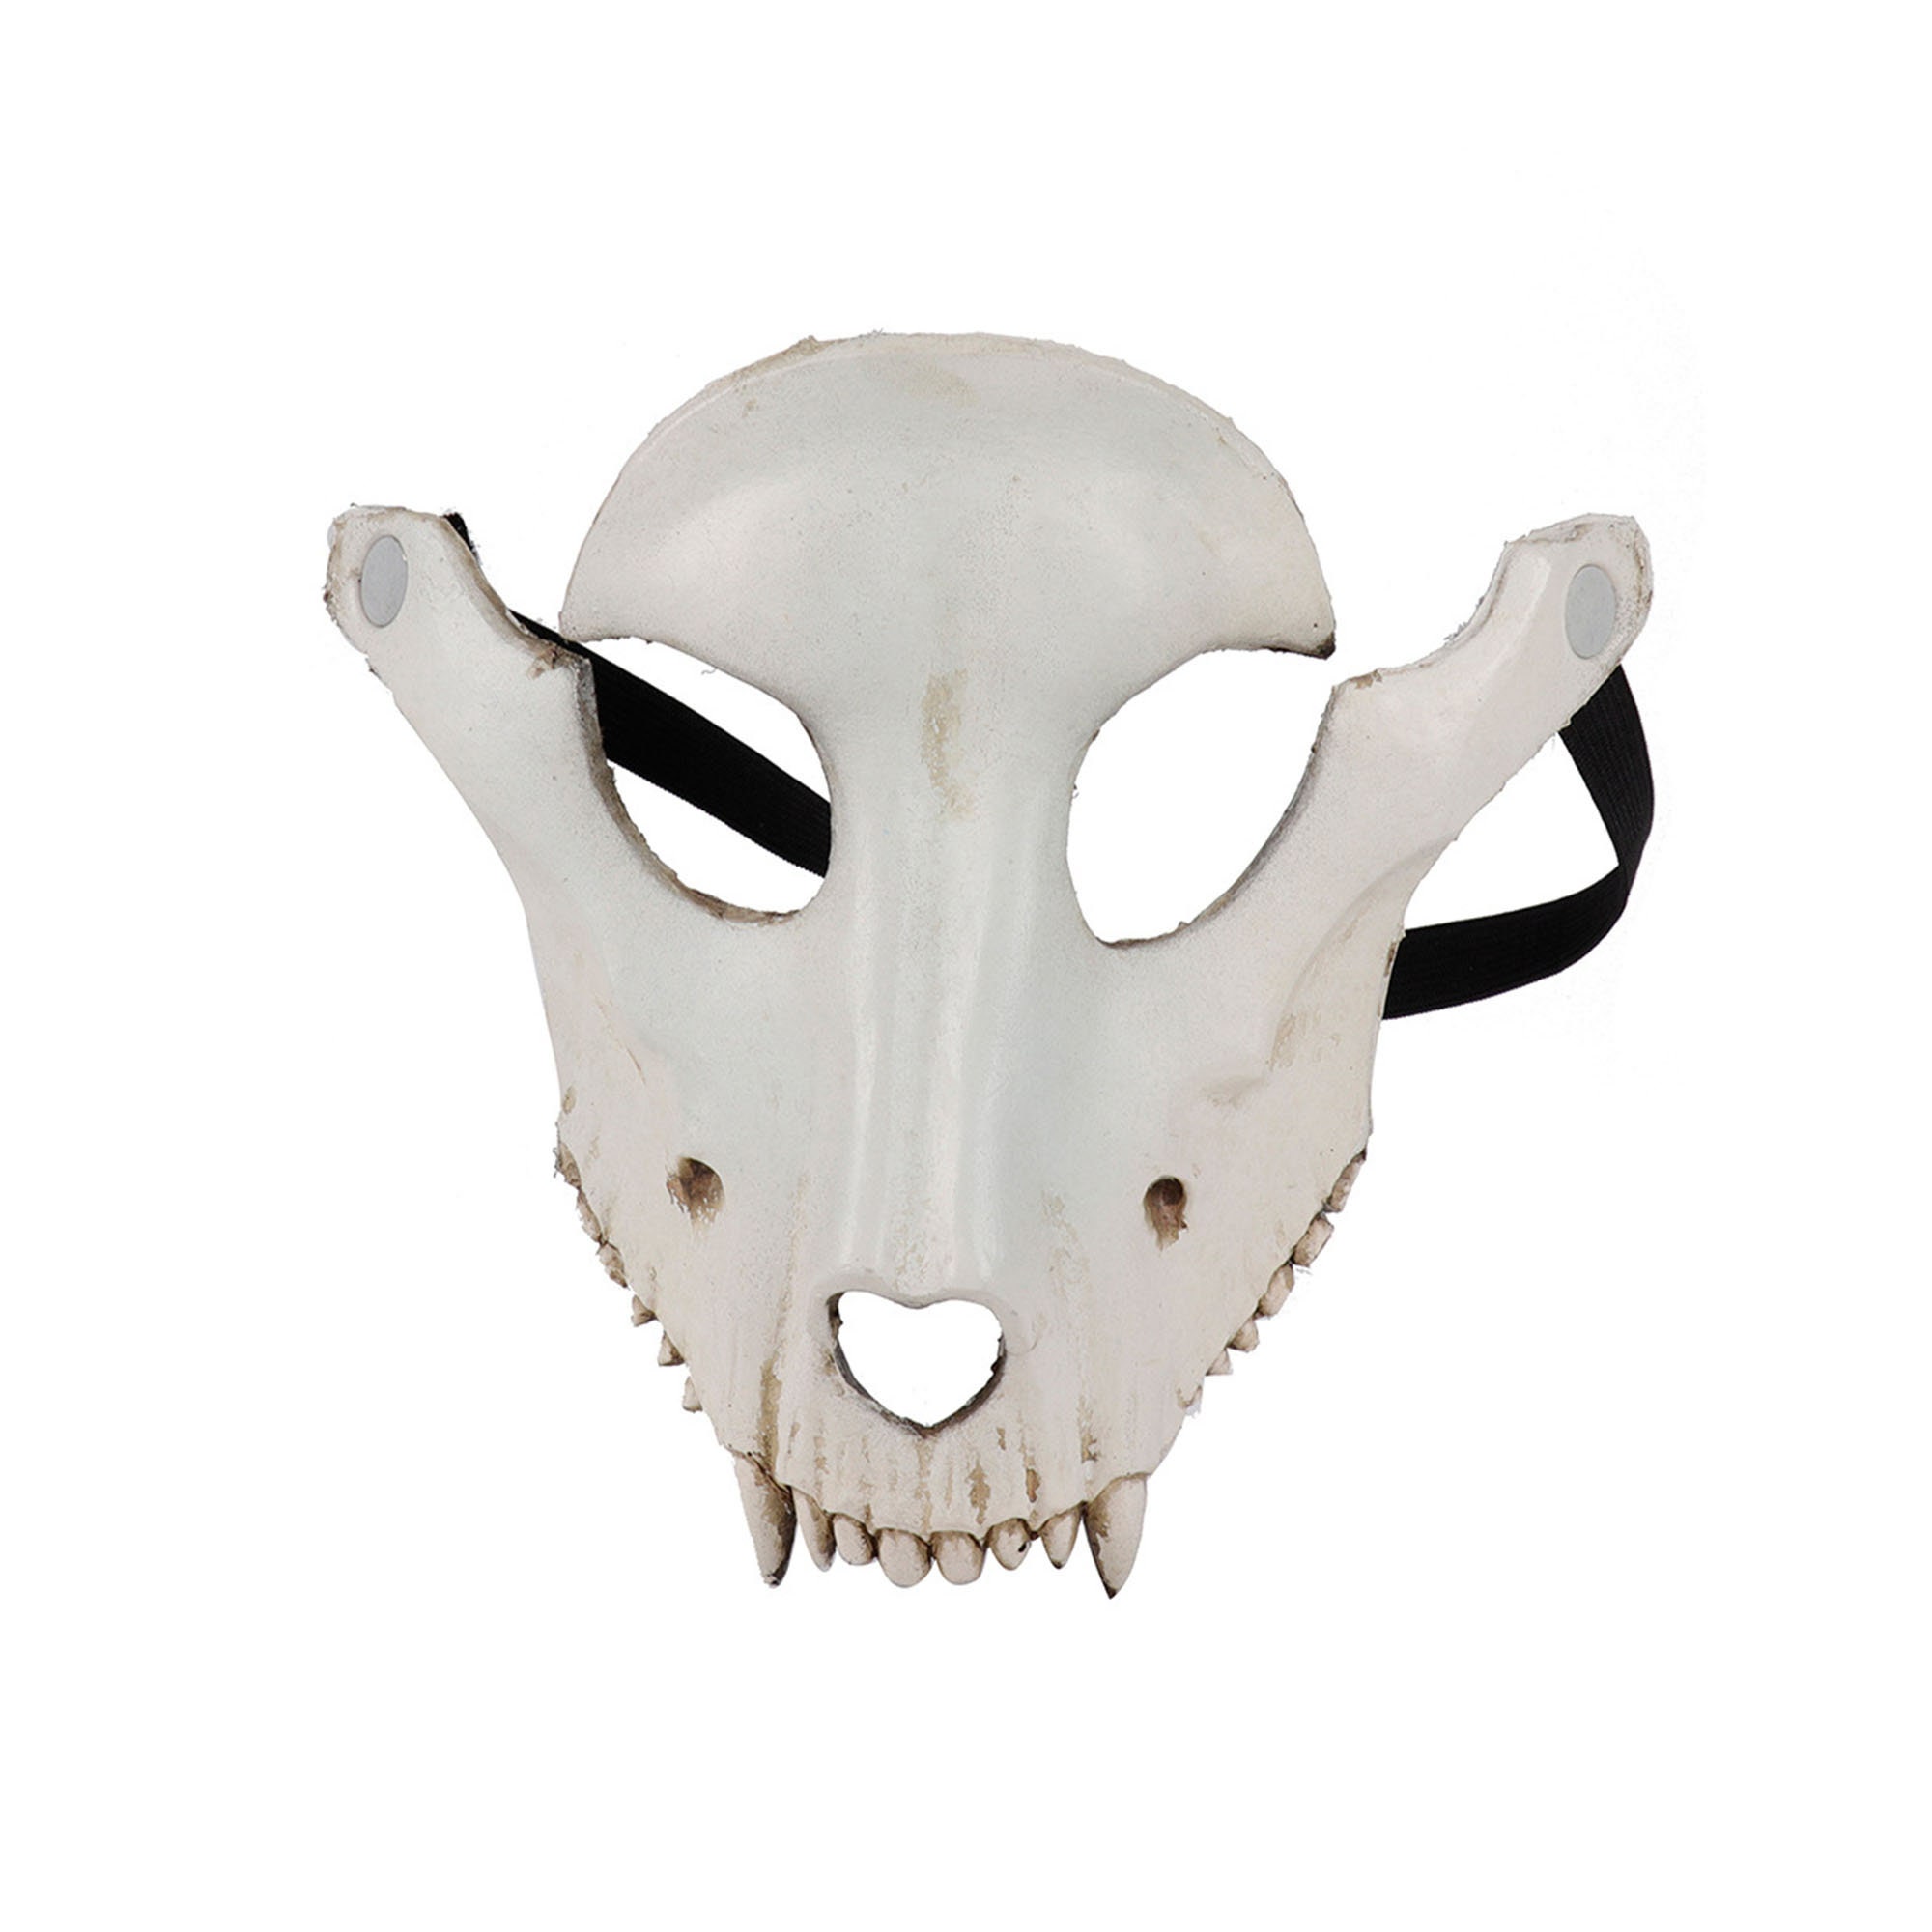 Animal Skull Masks